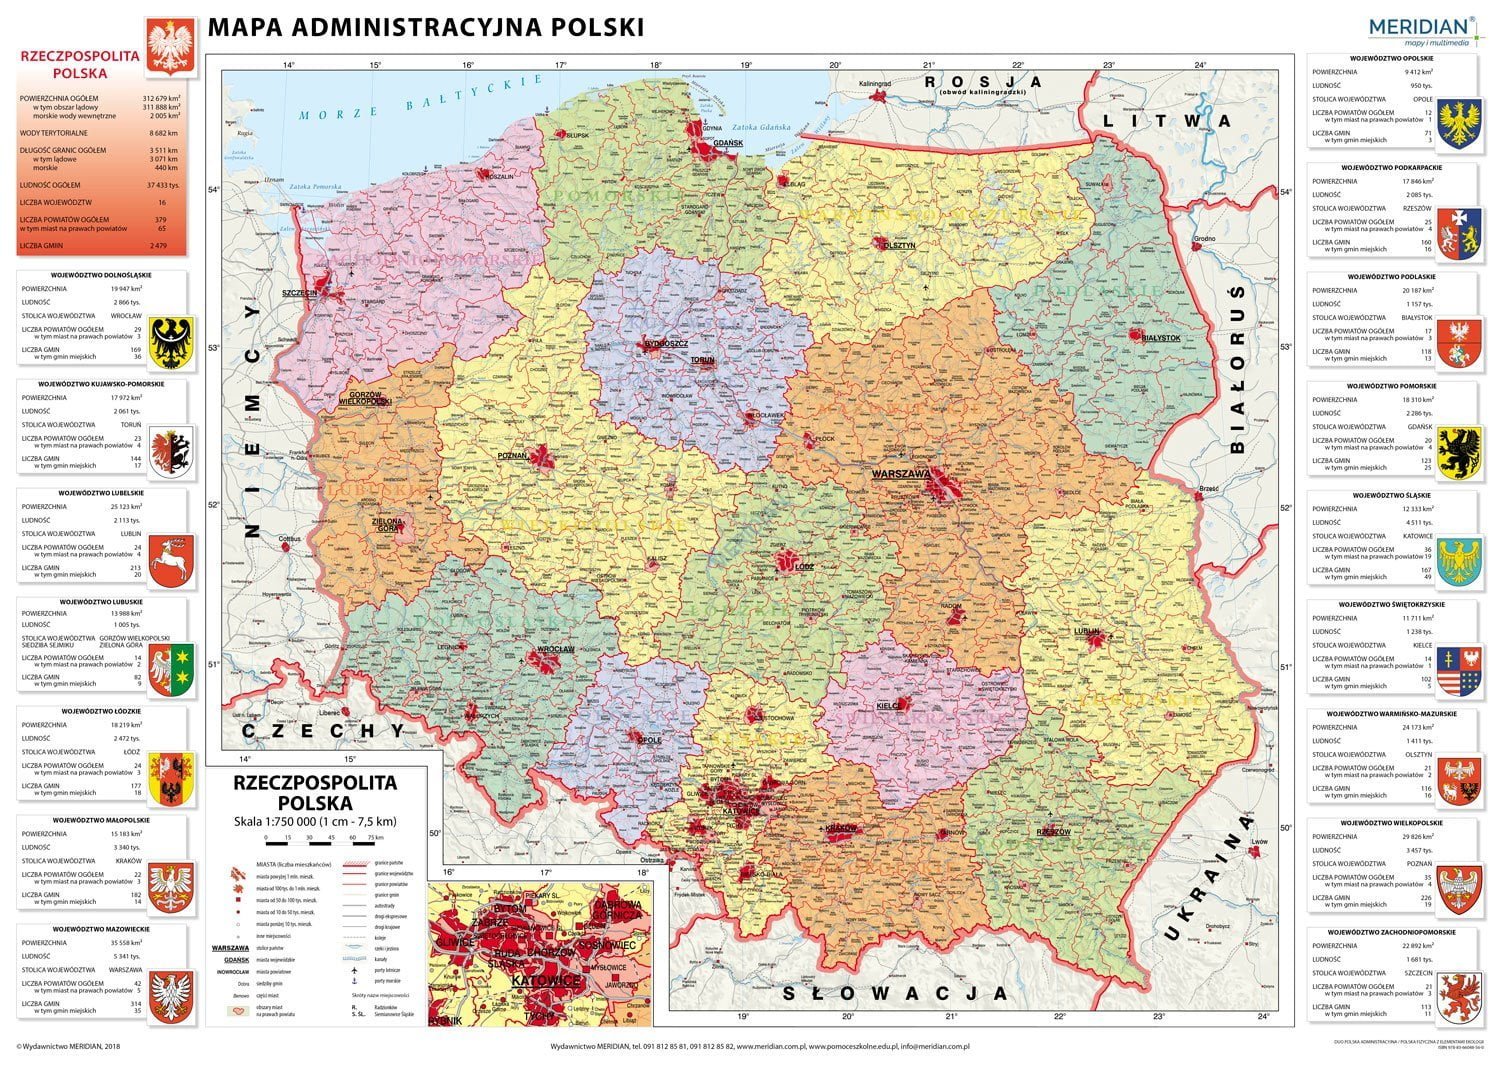 DUO Mapa administracyjna Polski / Polska fizyczna